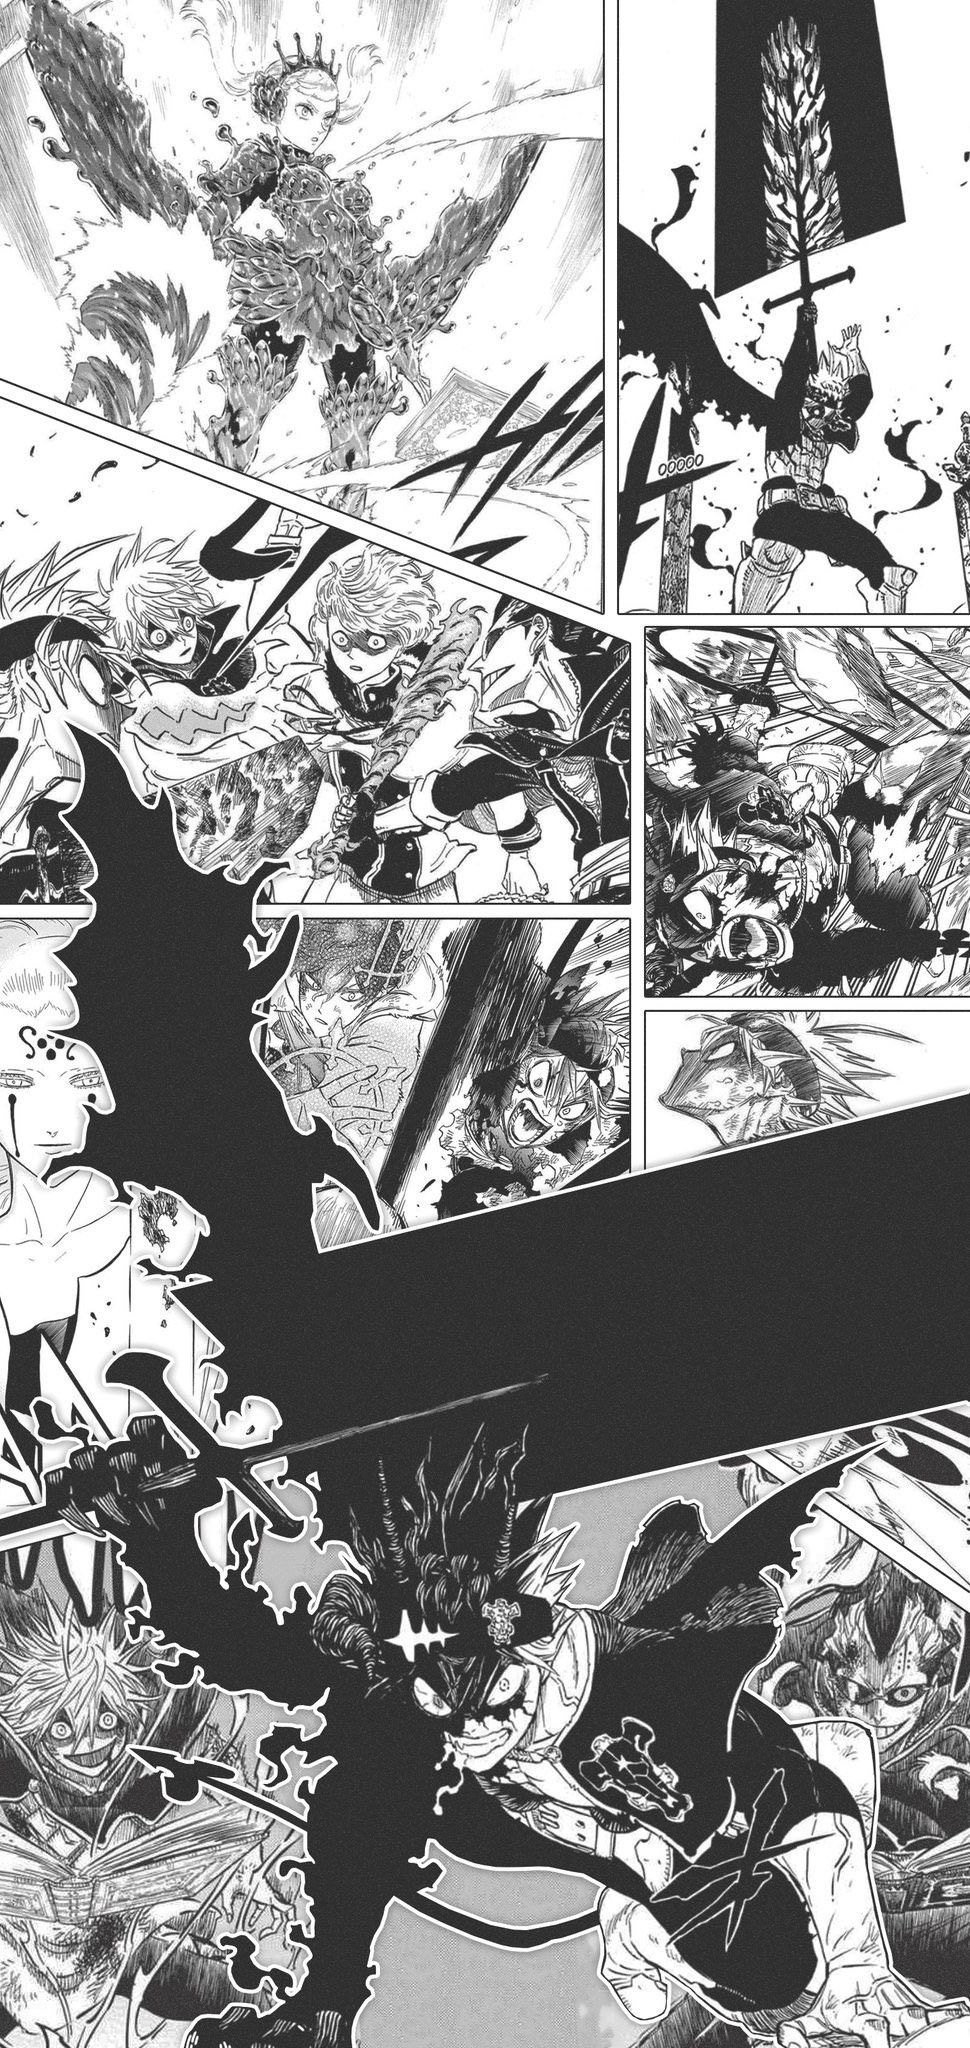 Asta Demon. Black clover manga, Anime wallpaper, Anime background